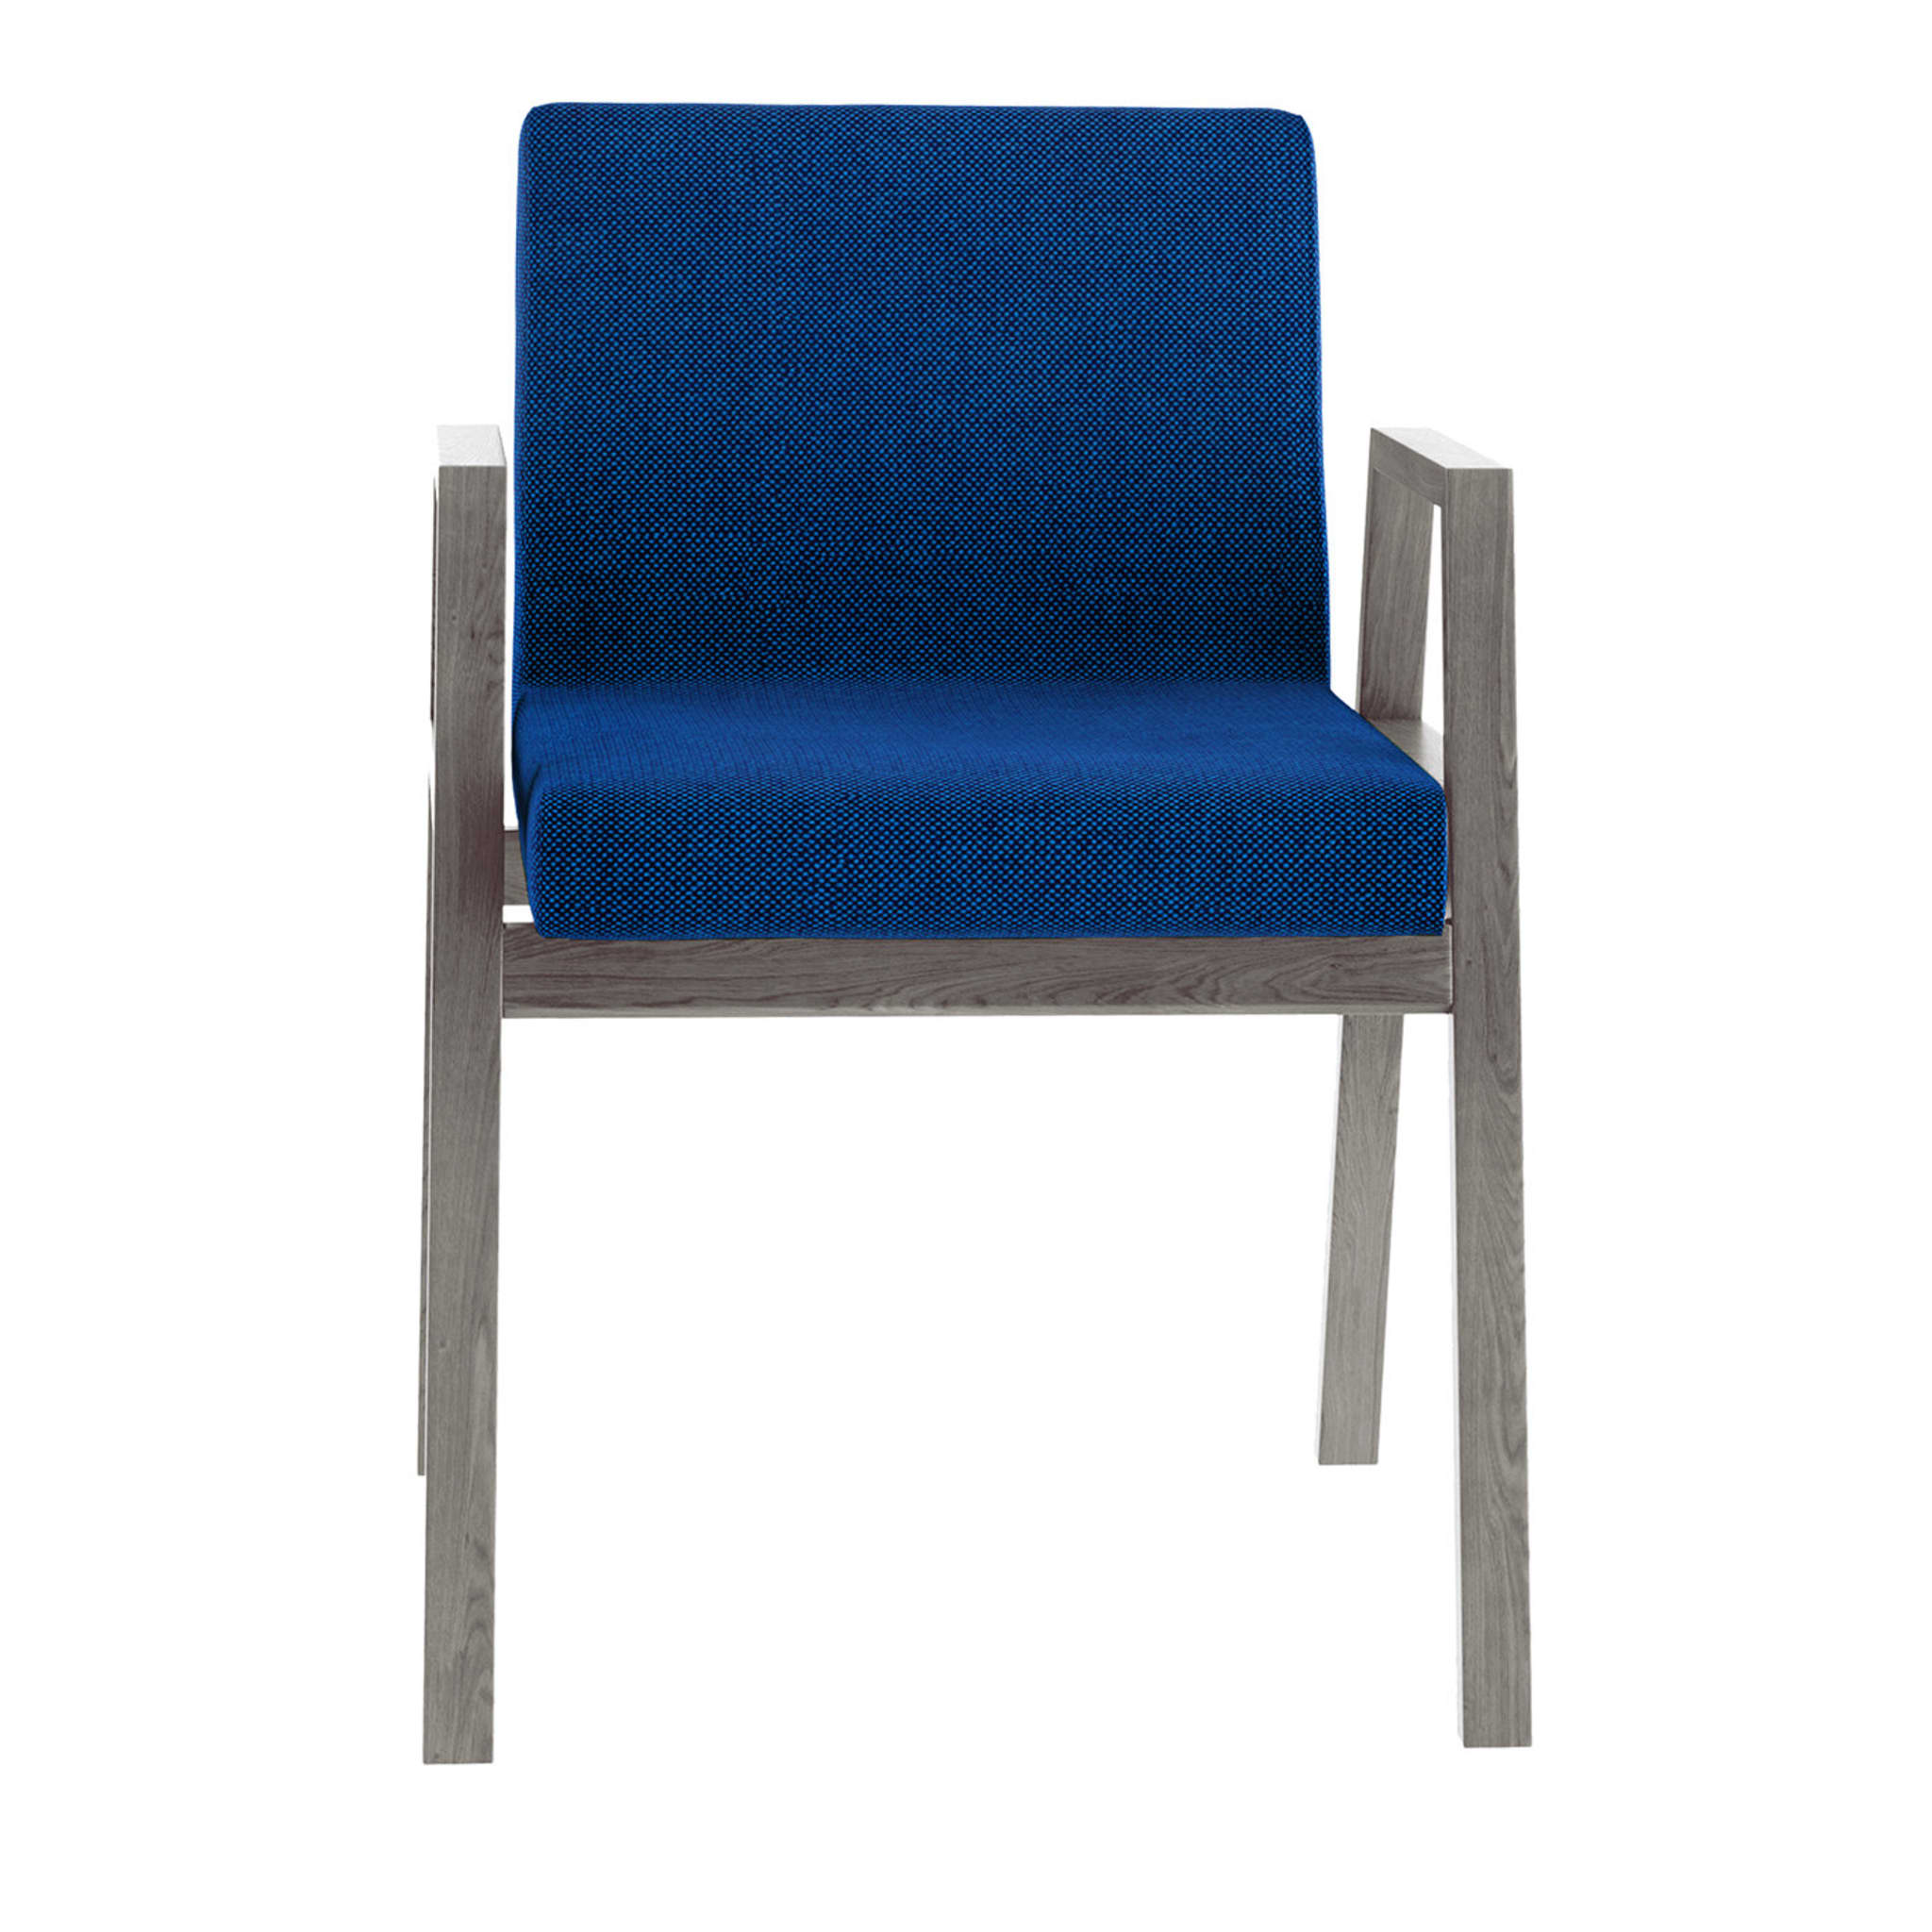 Babela Blue Chair - Main view